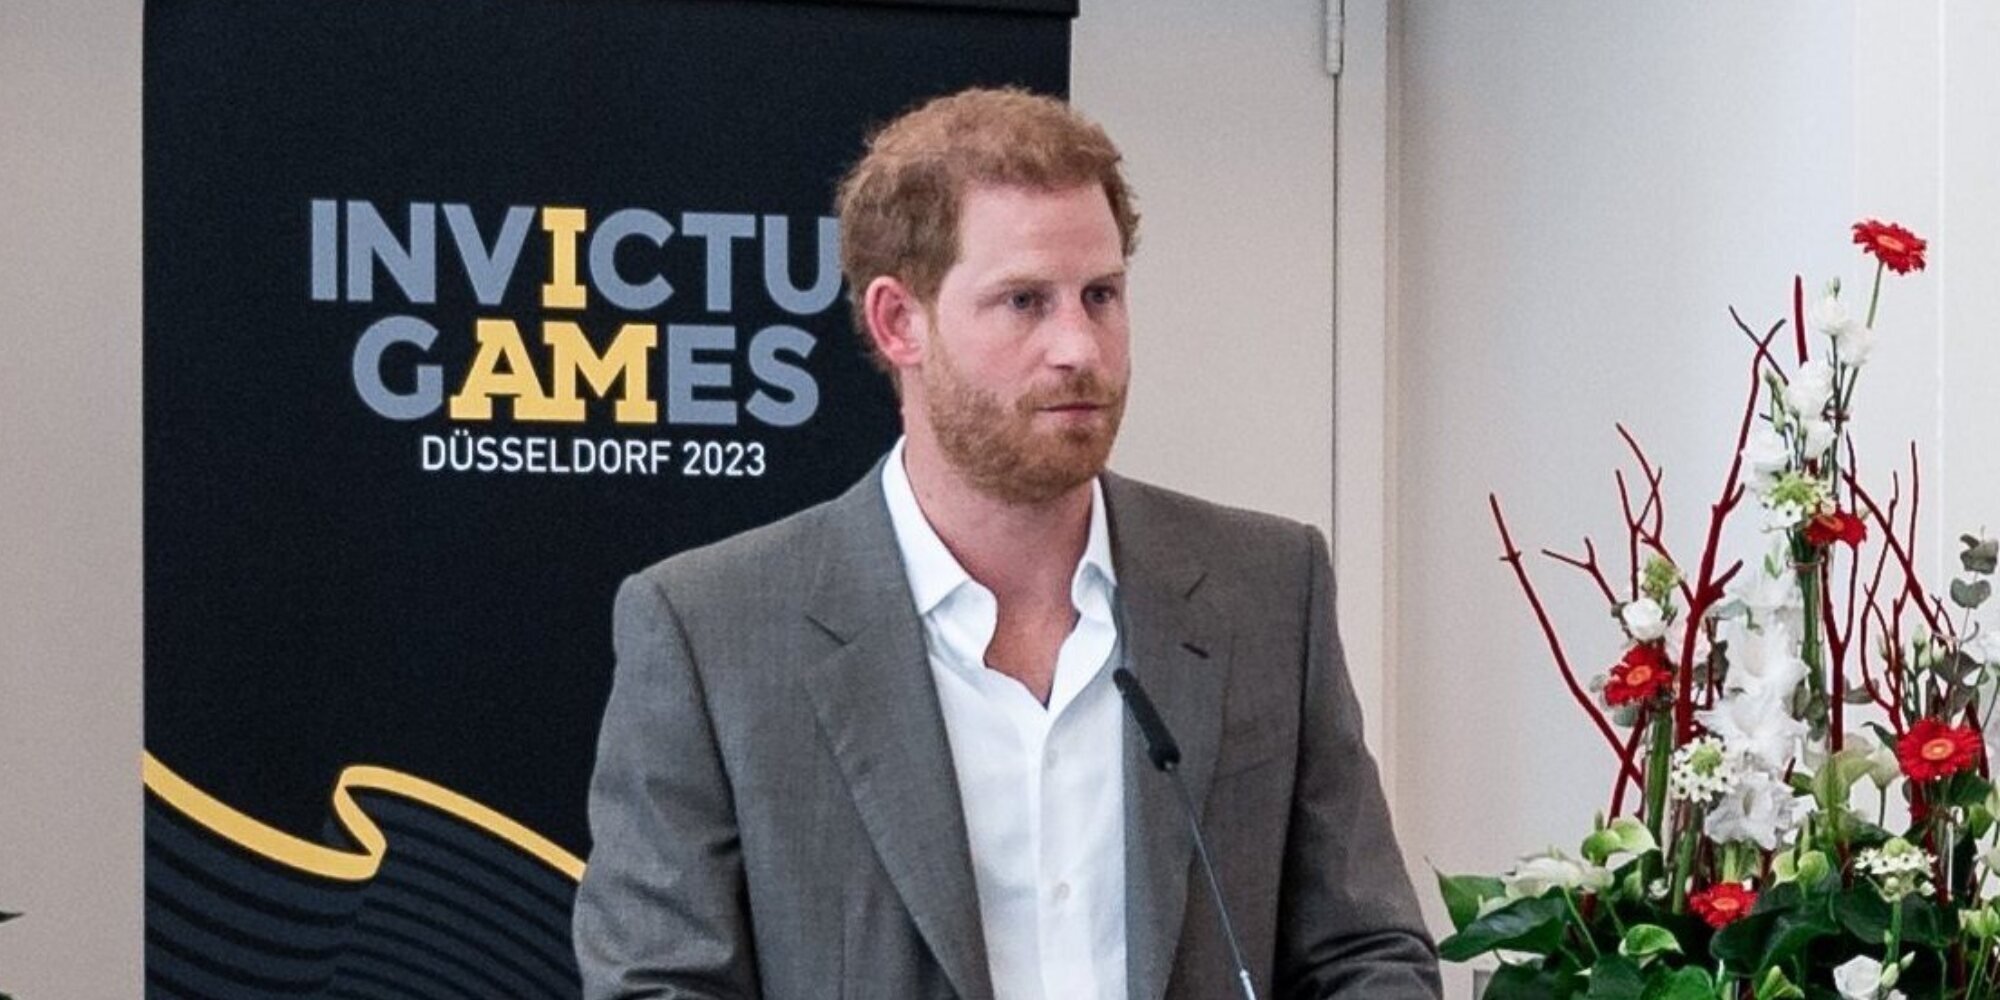 El Príncipe Harry sorprende al hablar en alemán en la presentación de los Invictus Games 2023